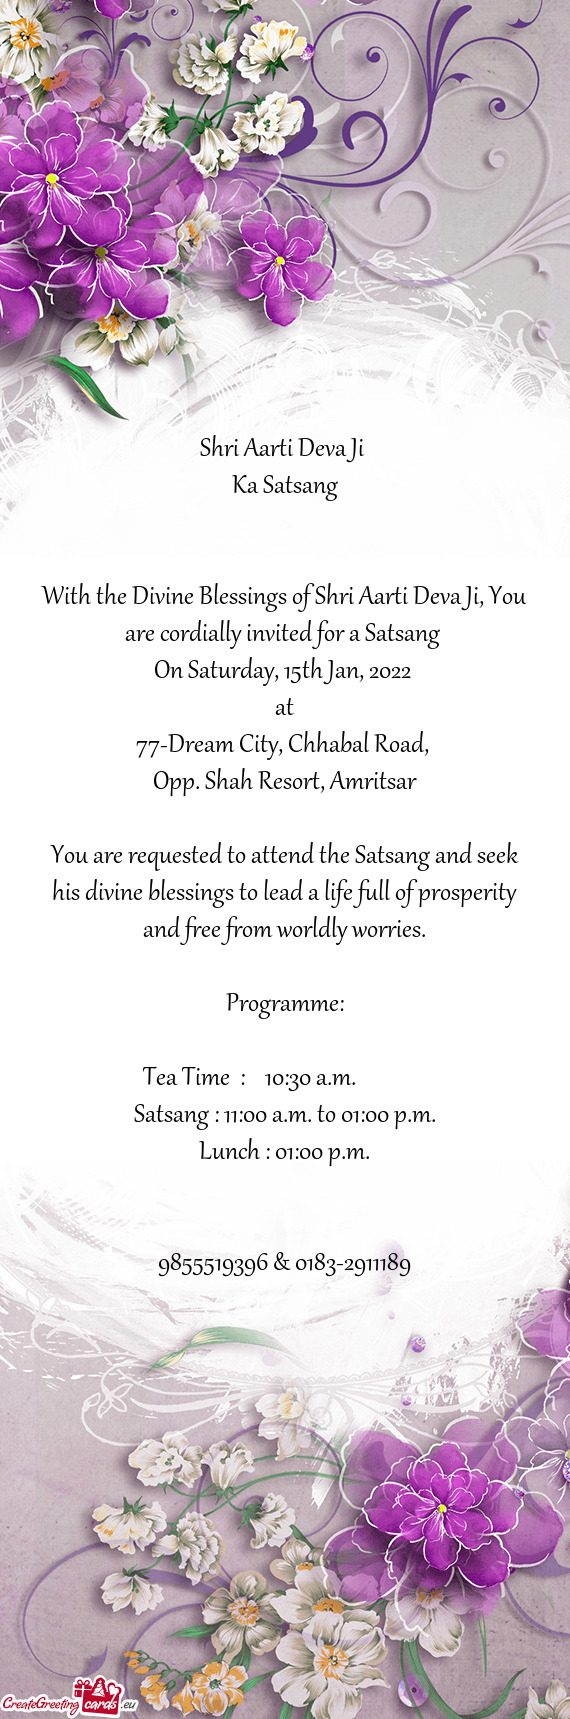 Shri Aarti Deva Ji